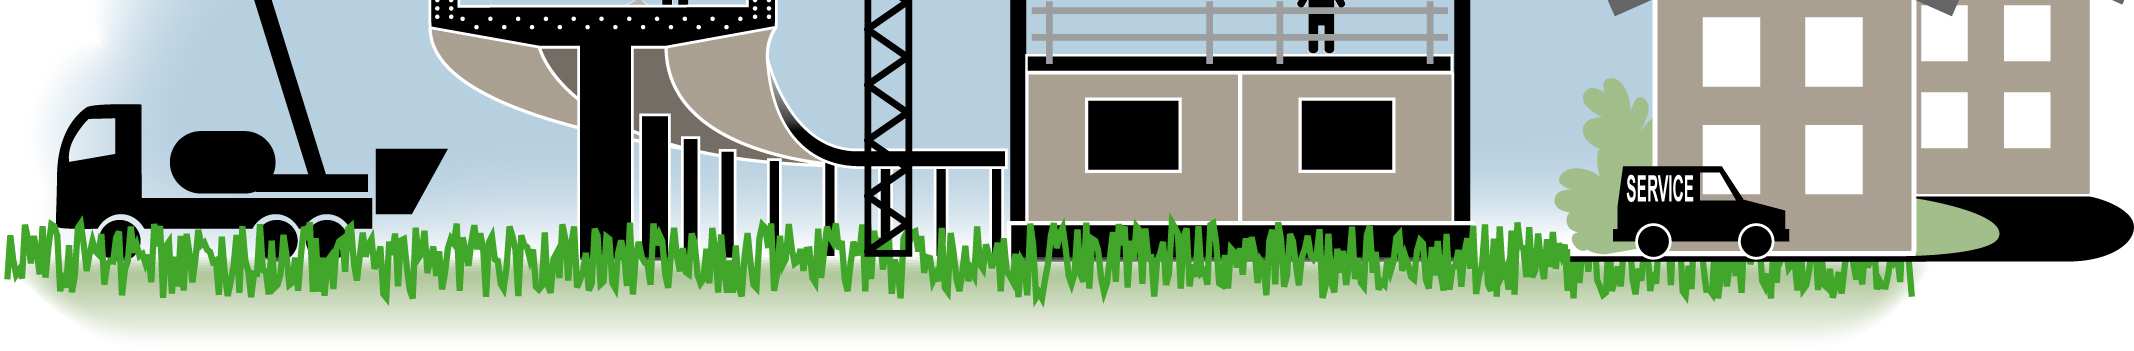 En byggnads miljöpåverkan Användning av: Råvaror/ byggmaterial Energi Mark Vatten Inomhusmiljö Luftkvalitet Termiskt klimat Ljus Ljud